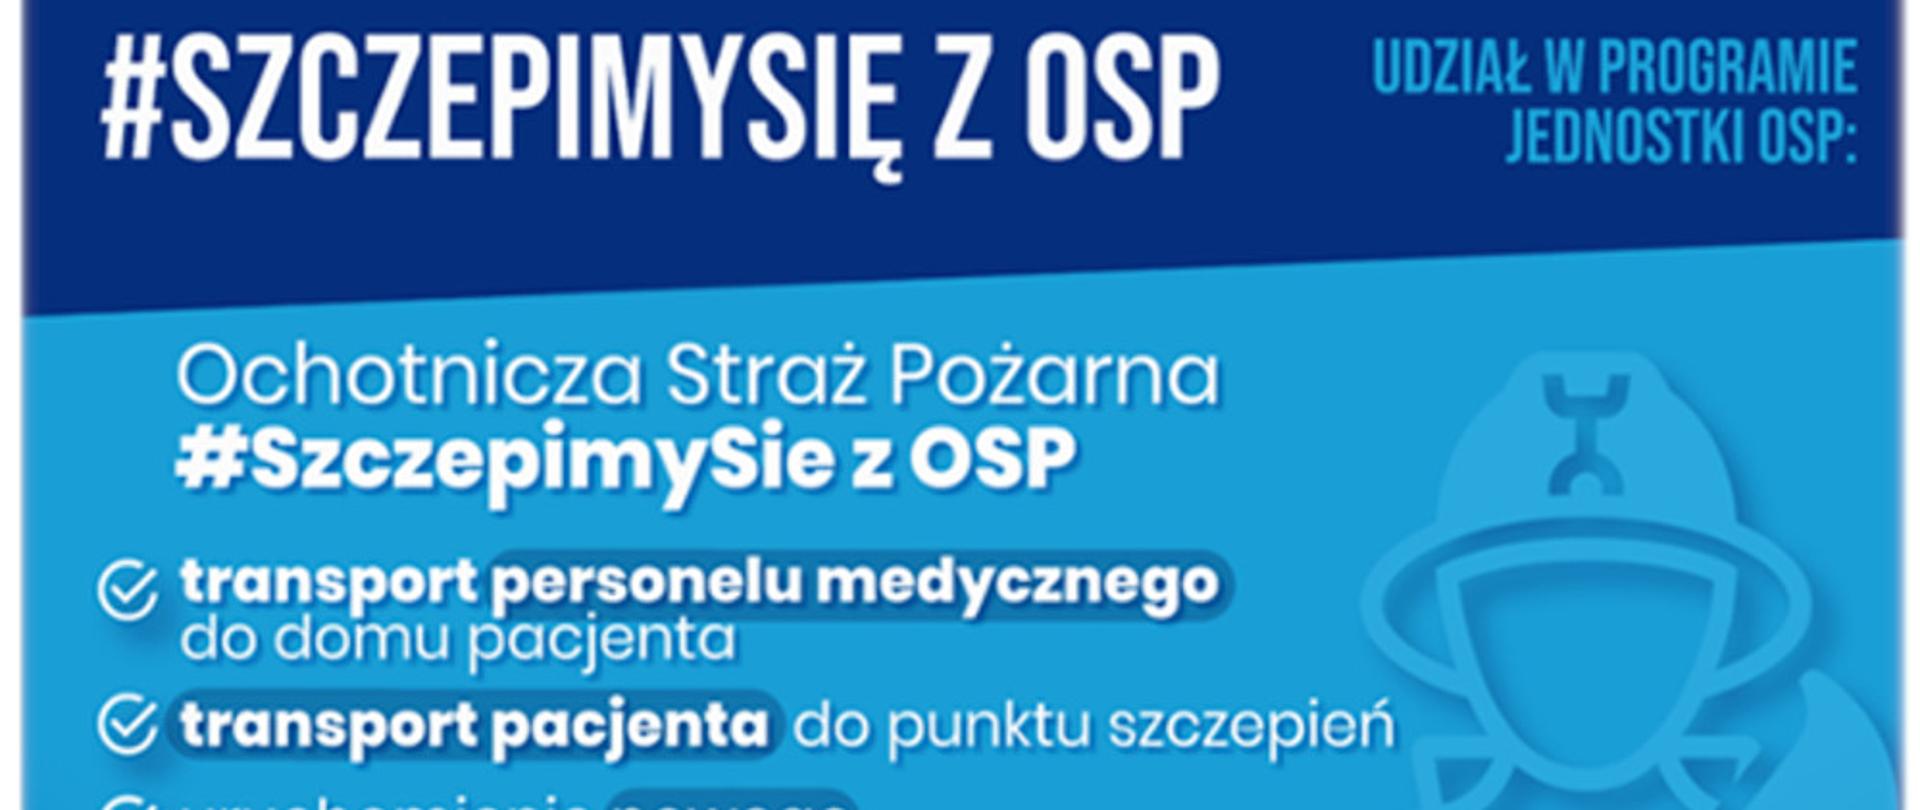 Plakat opisujący zadania dla jednostek OSP w ramach programu "SzczepimySię z OSP"